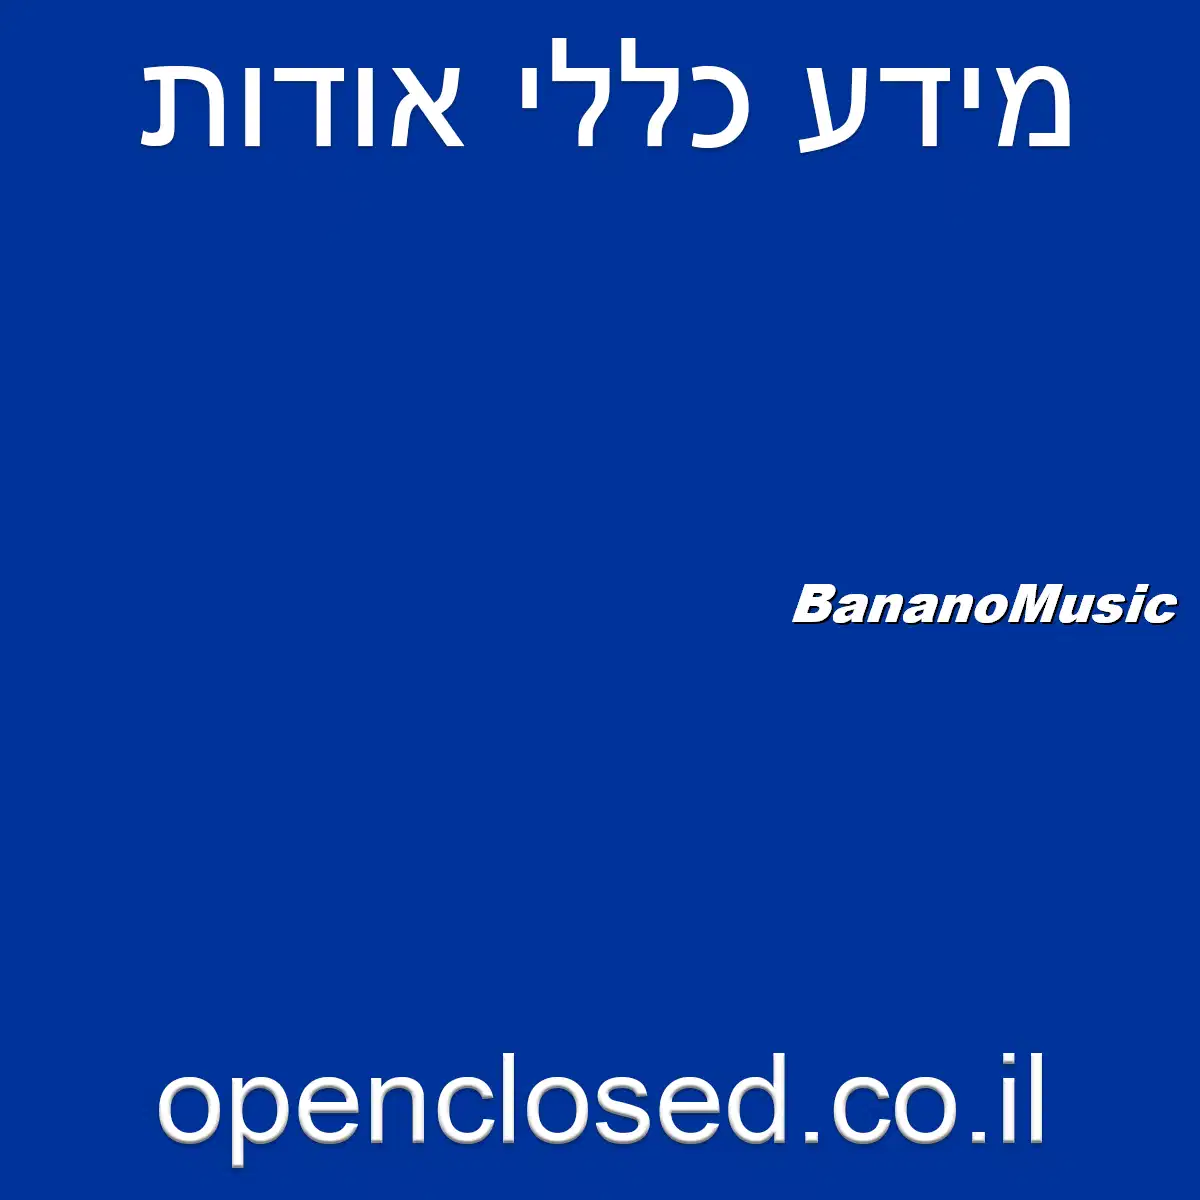 BananoMusic